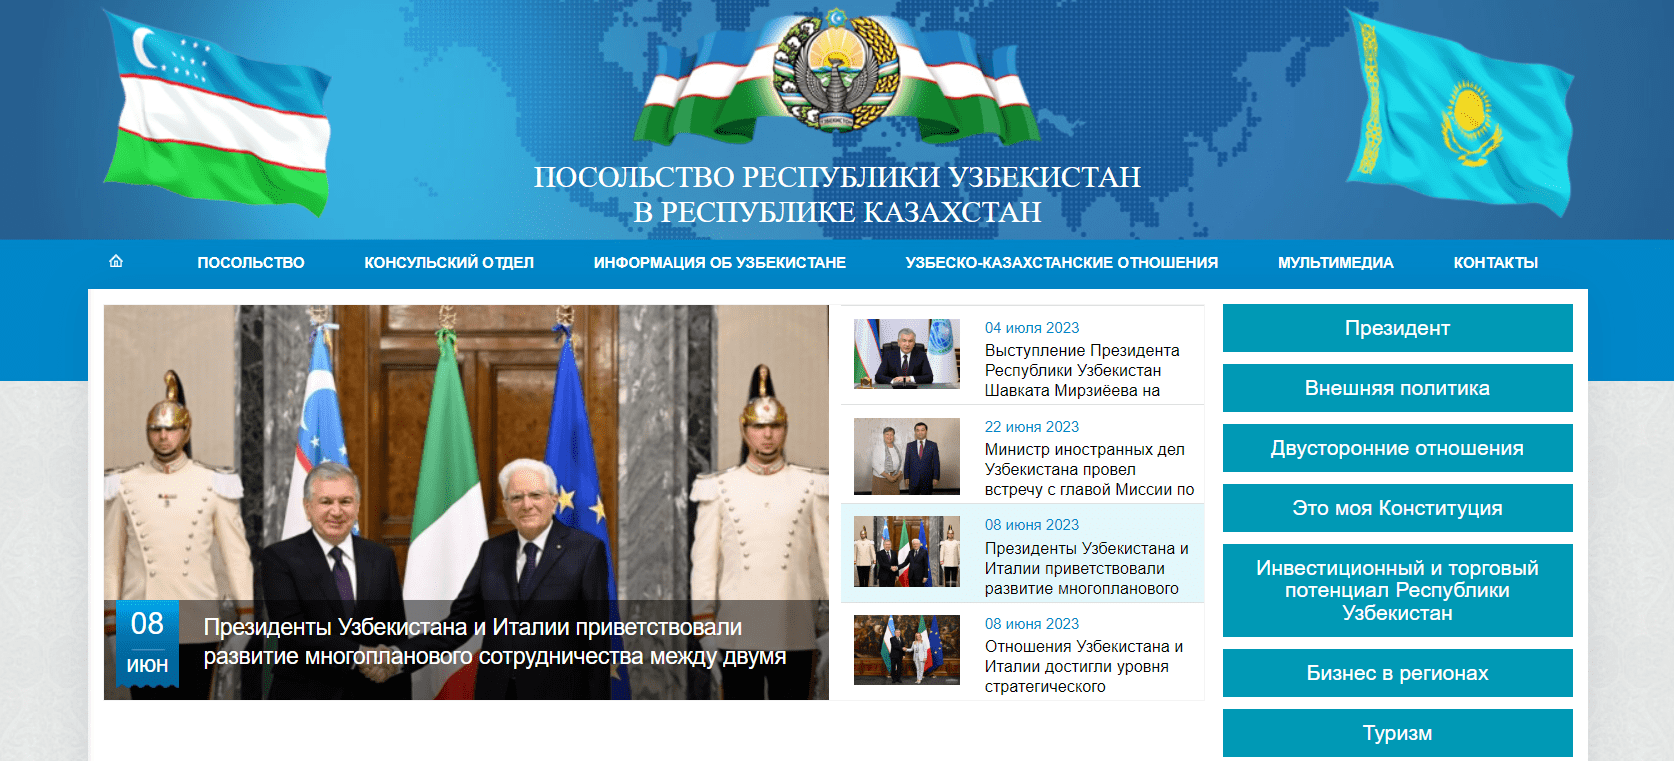 Посольство Республики Узбекистан в Республике Казахстан (uzembassy.kz) - официальный сайт